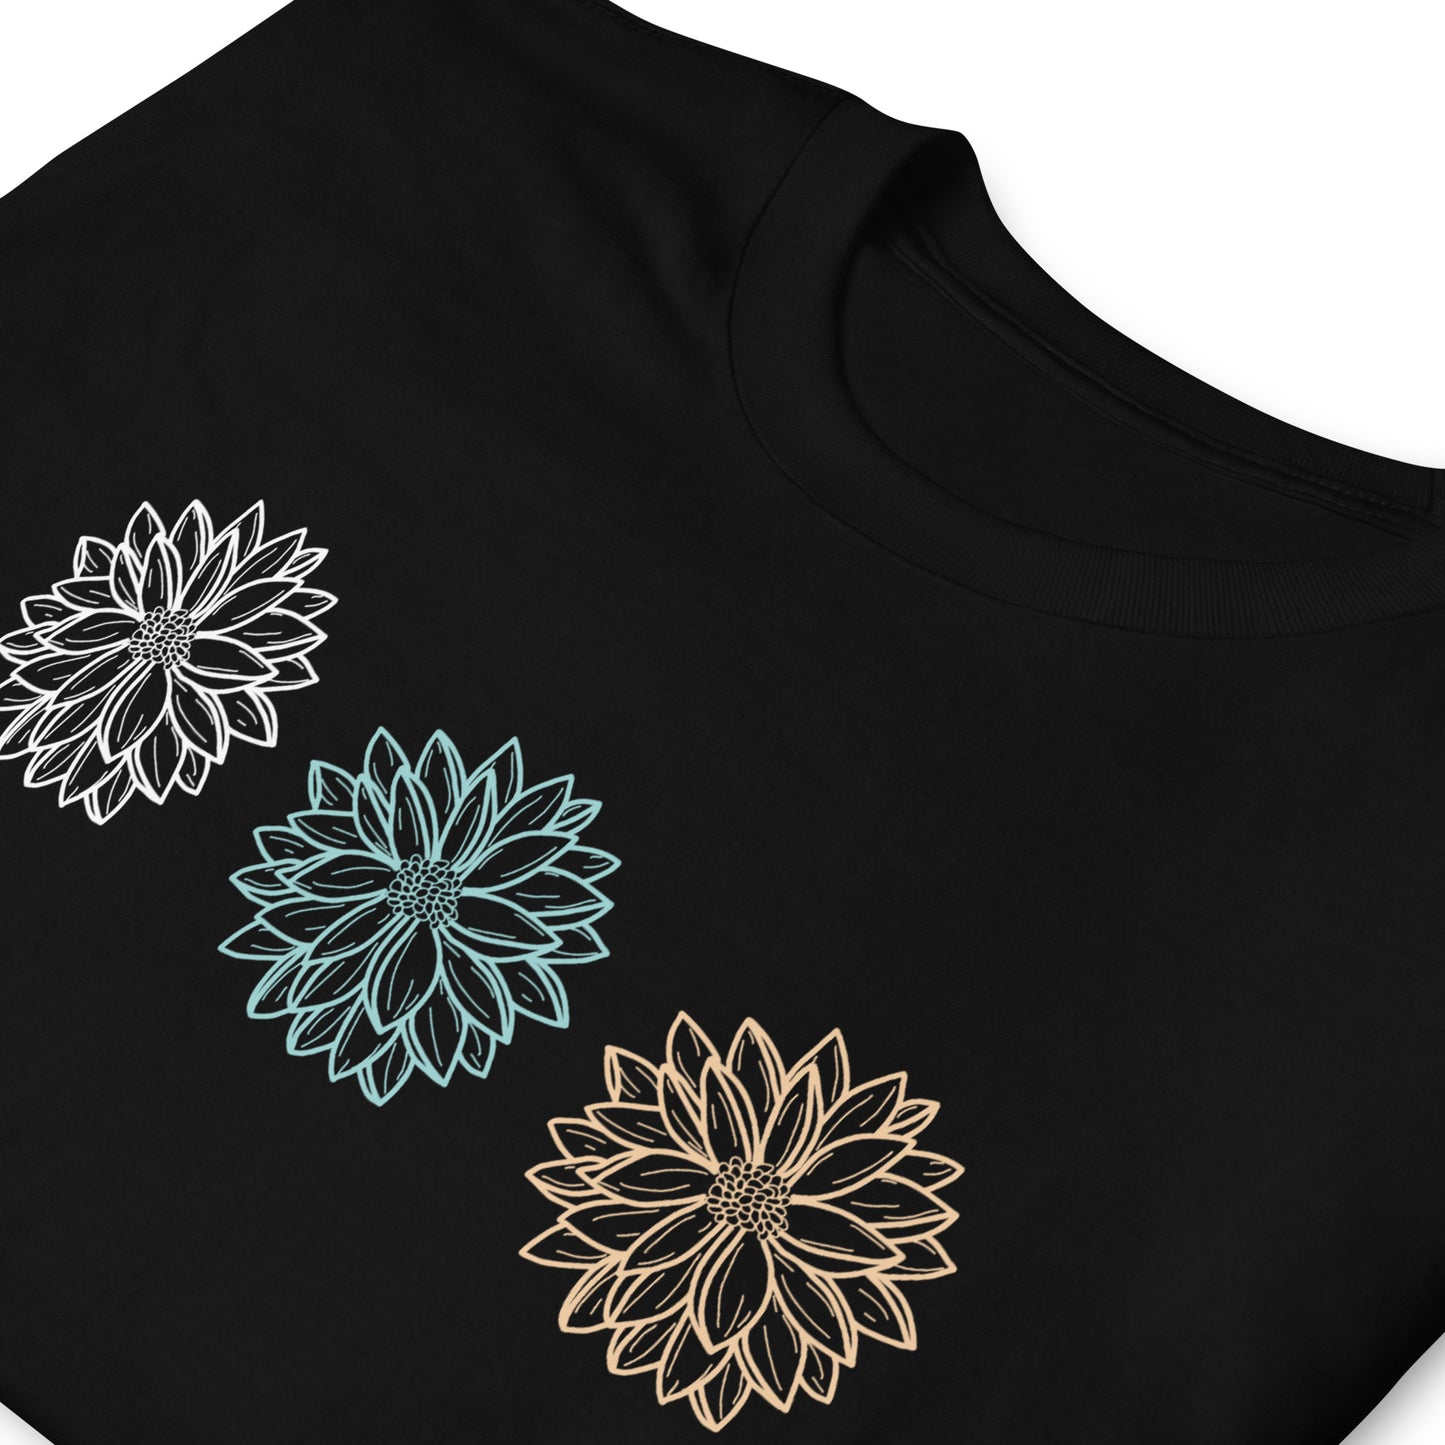 Unisex marškinėliai: Trys gėlių žiedai